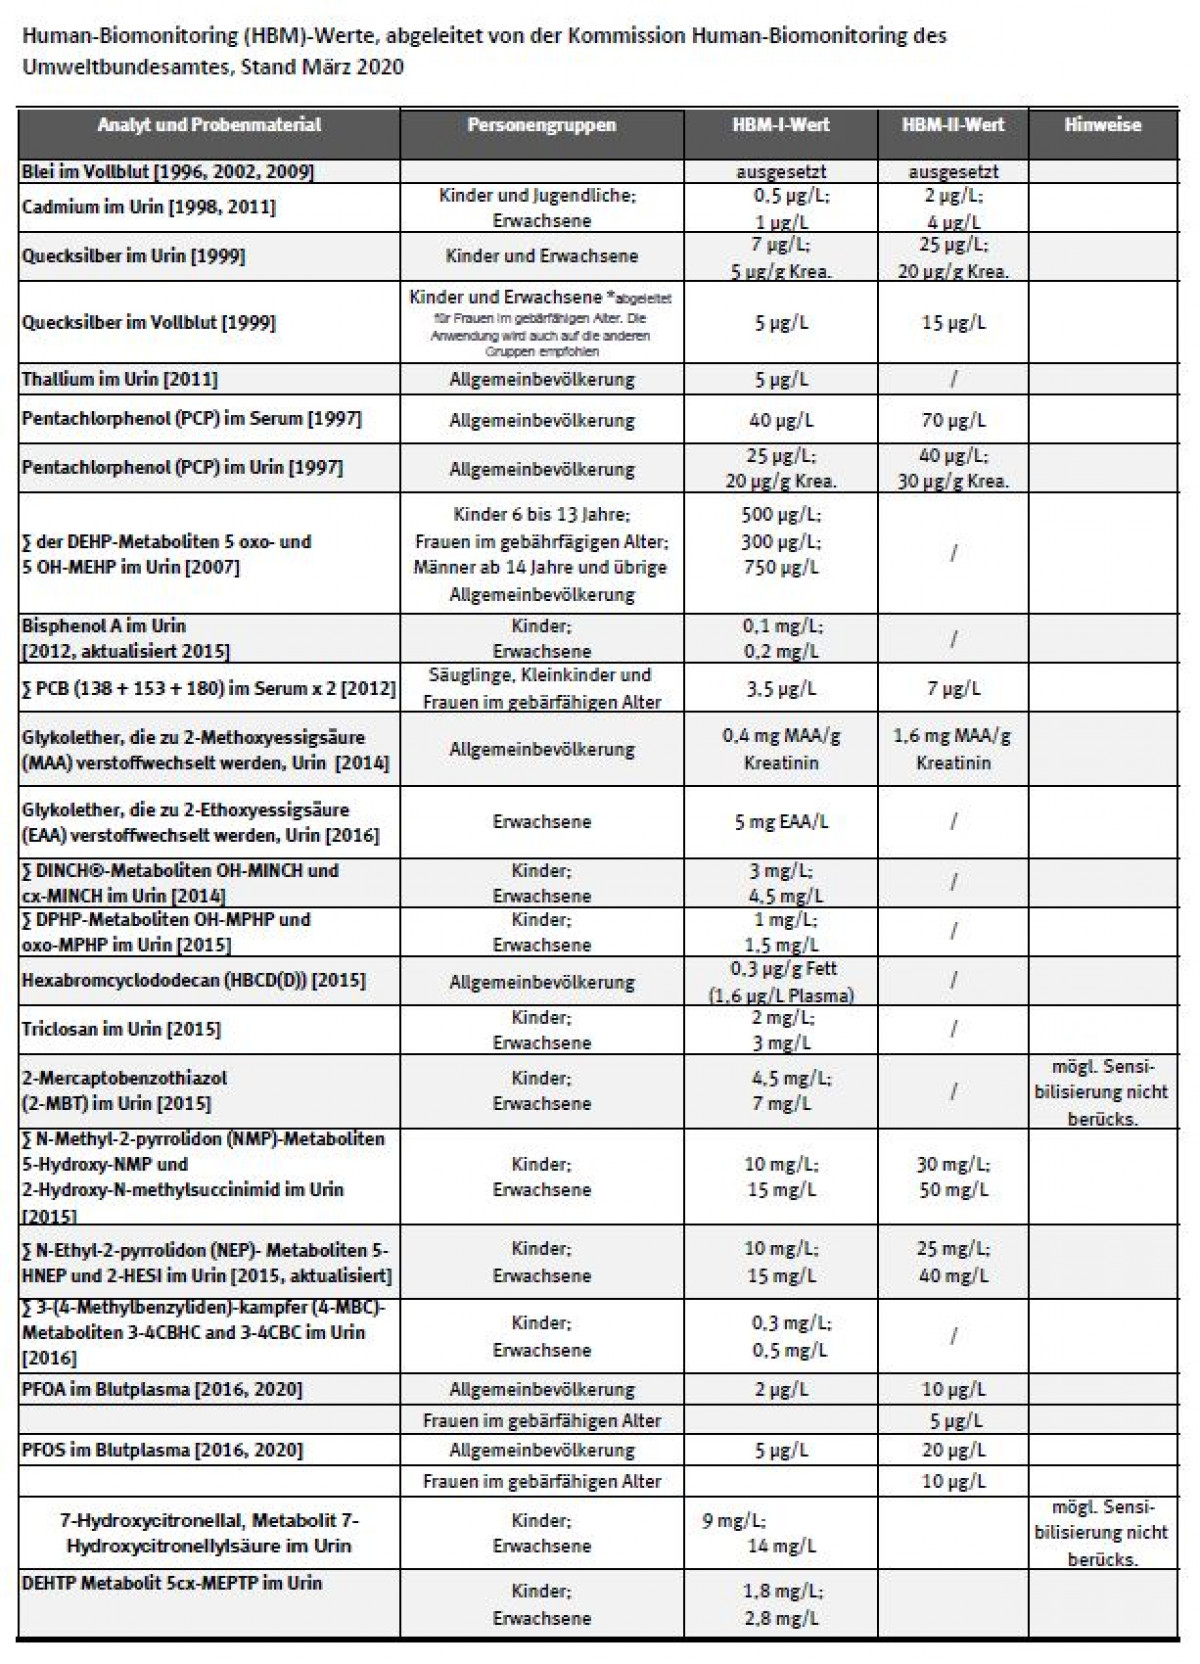 Tabelle der HBM-Werte, letzte Aktualisierung Juni 2012